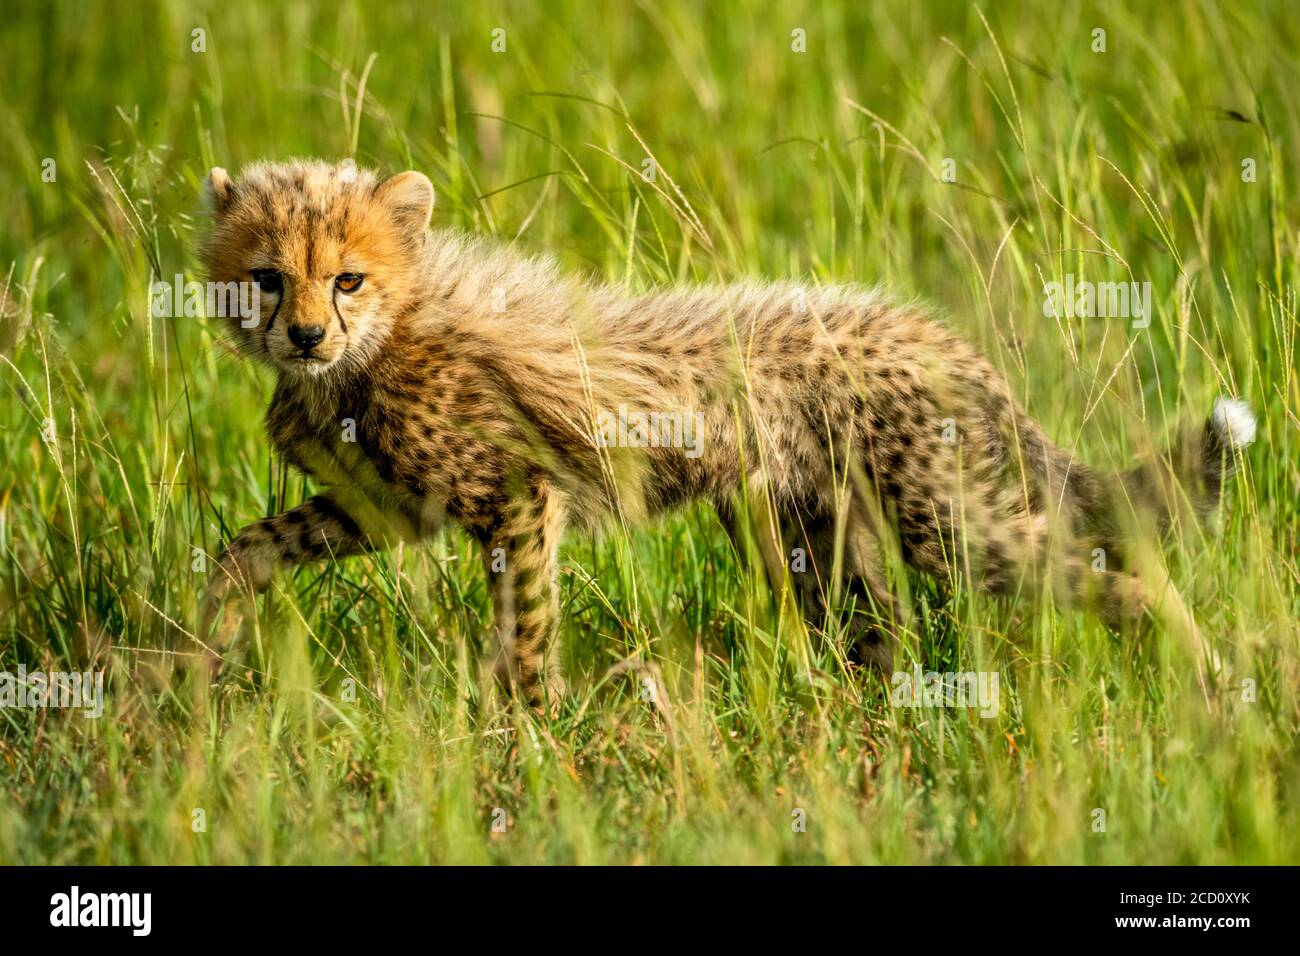 Cheetah cub (Acinonyx jubatus) lifting leg while walking through the grass on the savanna and looking at the camera; Tanzania Stock Photo